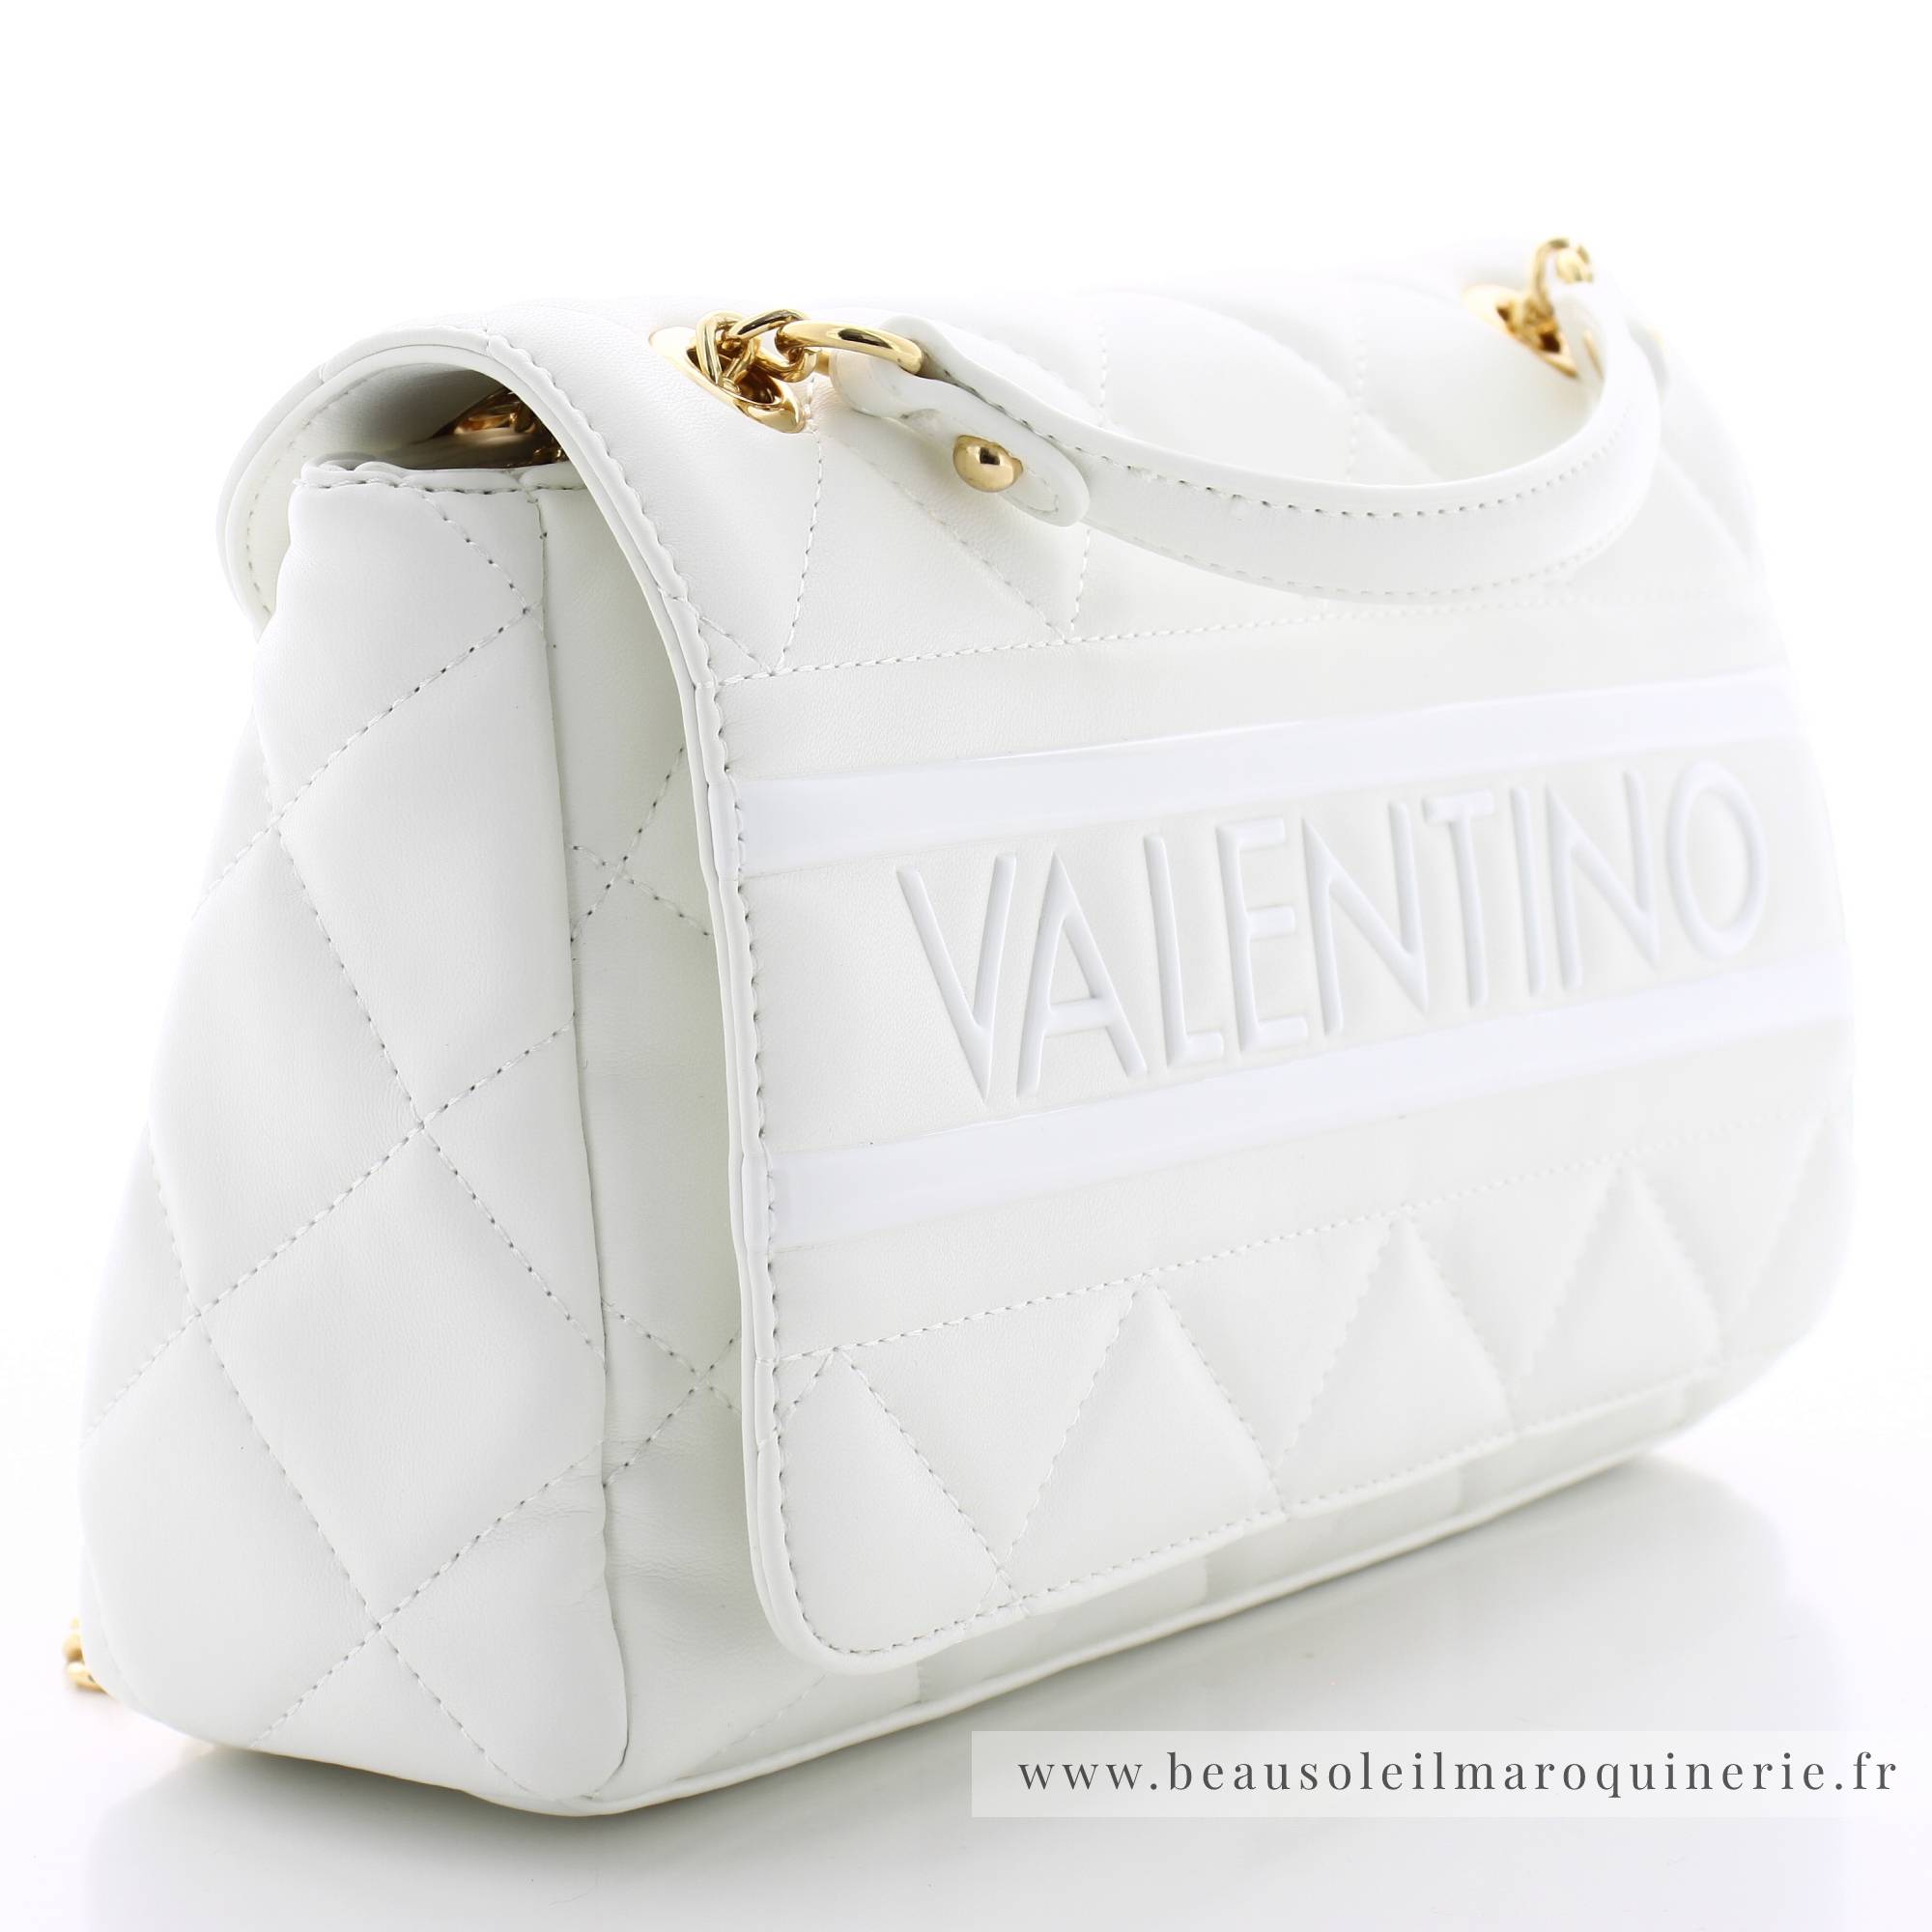 Sac porté épaule Valentino Mario VBS51O05 006 couleur blanc cassé vue de profil